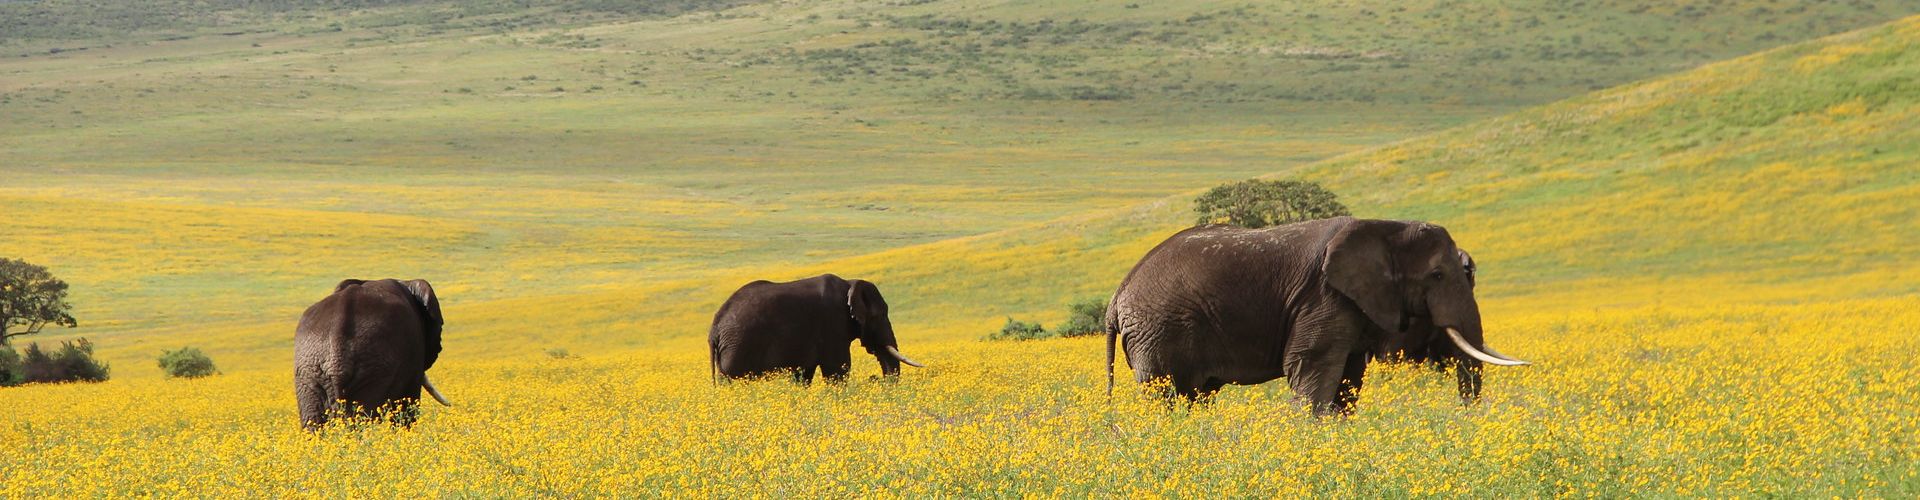 Nuestro safari de 4 días por Tanzania te lleva a los elefantes del Área de Conservación del Ngorongoro